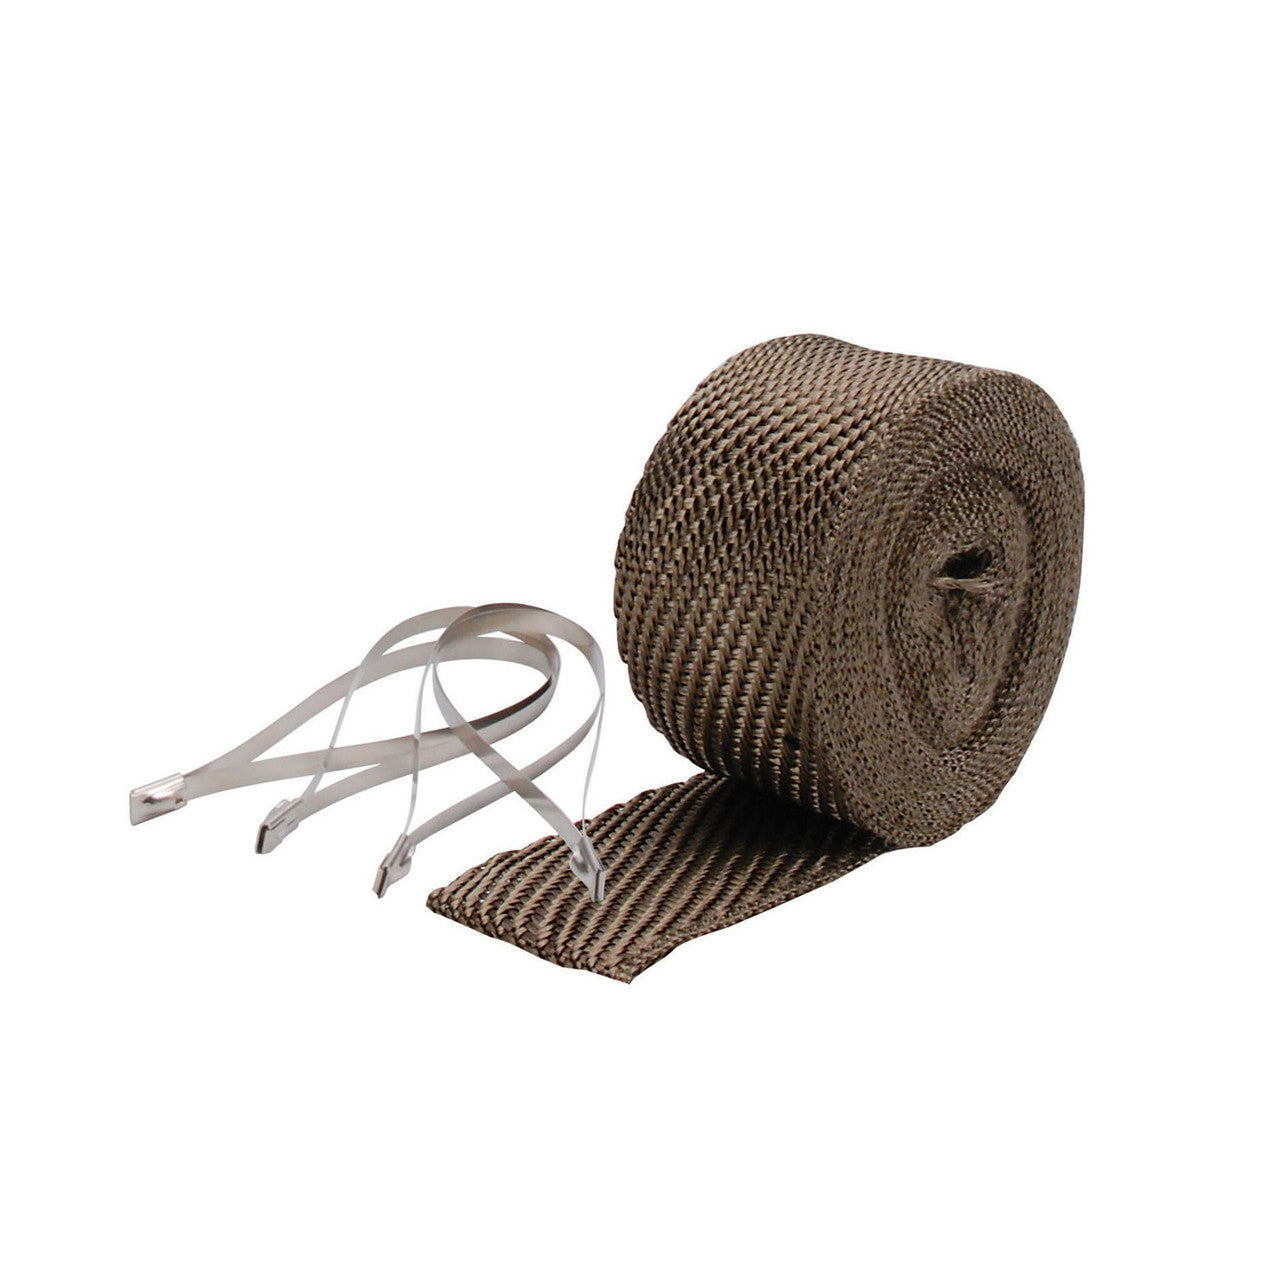 Pipe Wrap & Locking Tie Kit